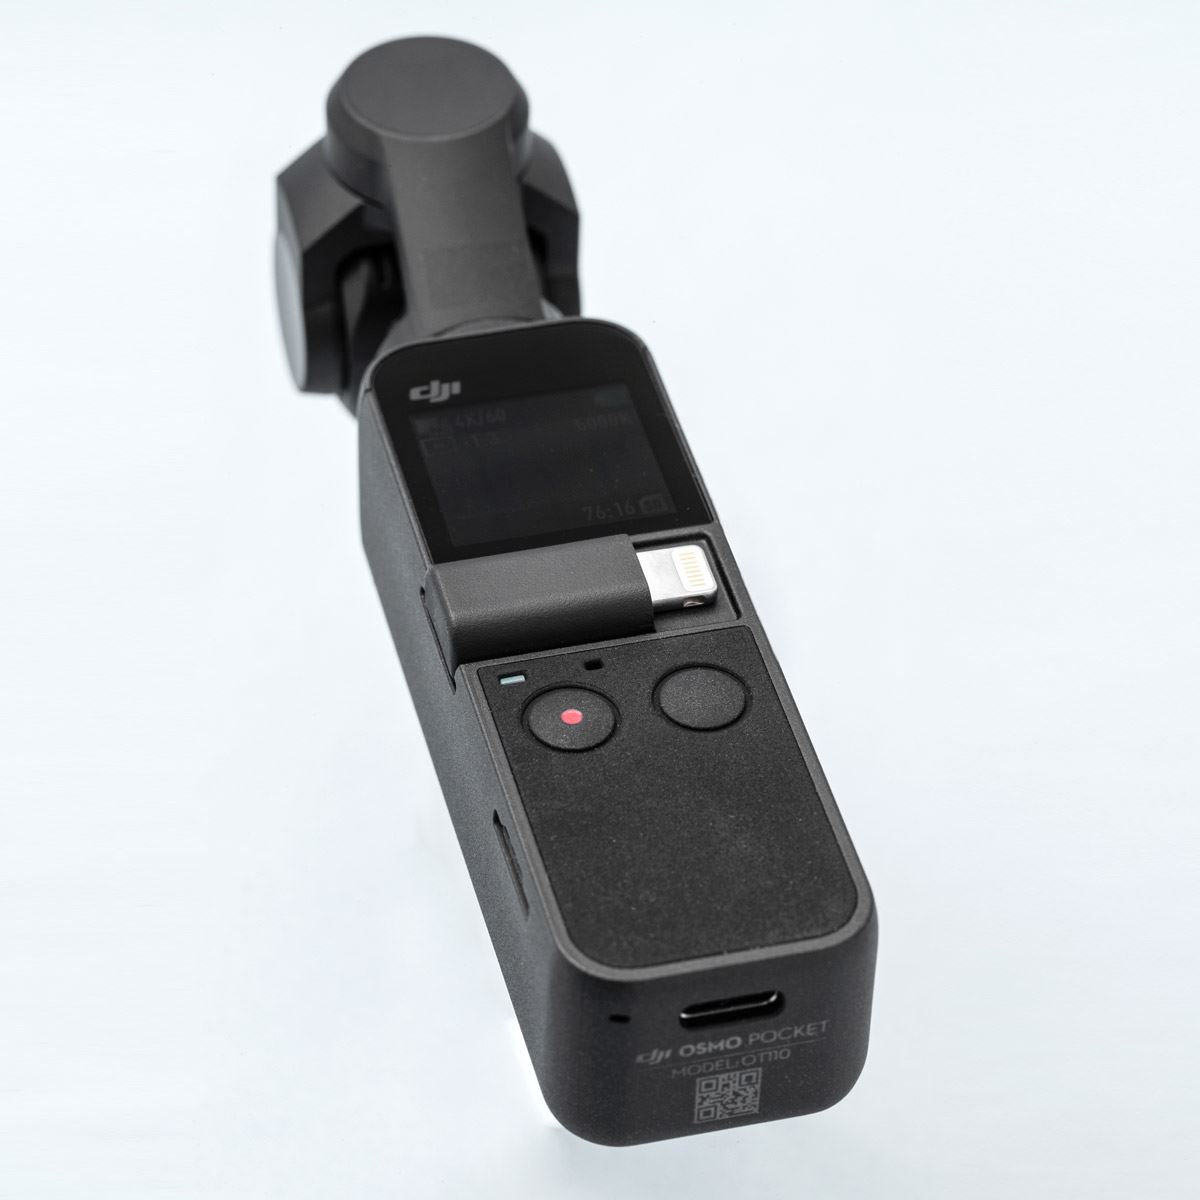 小型ジンバルカメラ「Osmo Pocket」レビュー、毎日持ち歩いても苦に 